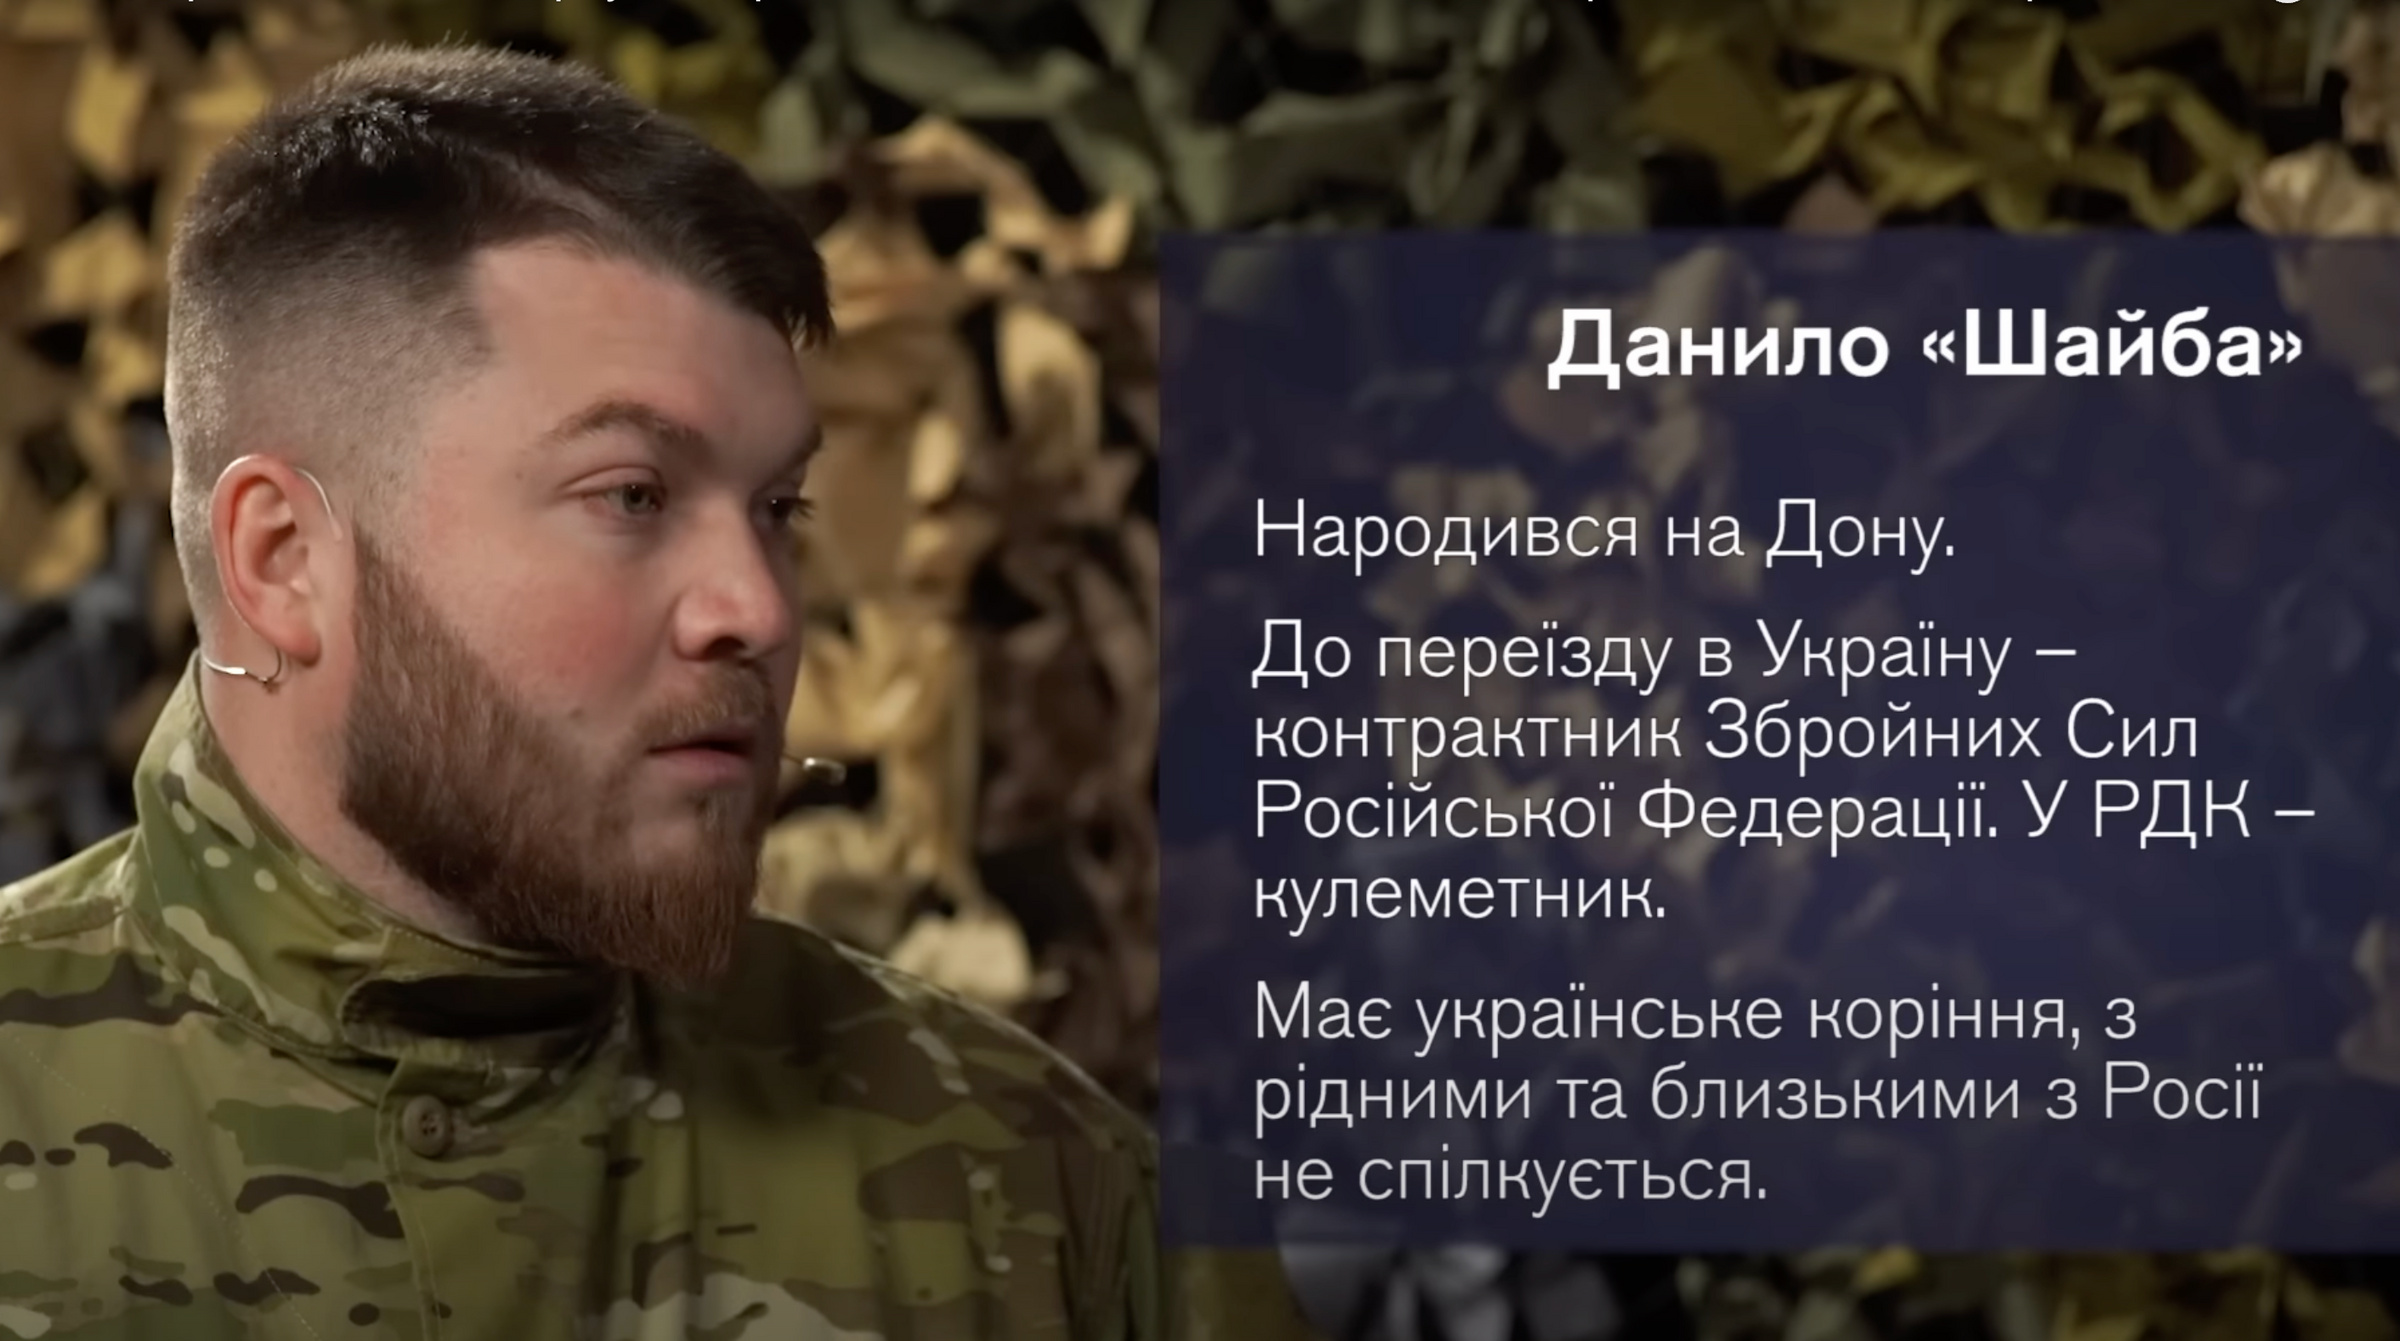 Украинские пропагандисты сняли фильм о "хороших русских", воюющих в РДК* против своей Родины. Фото © Соцсети